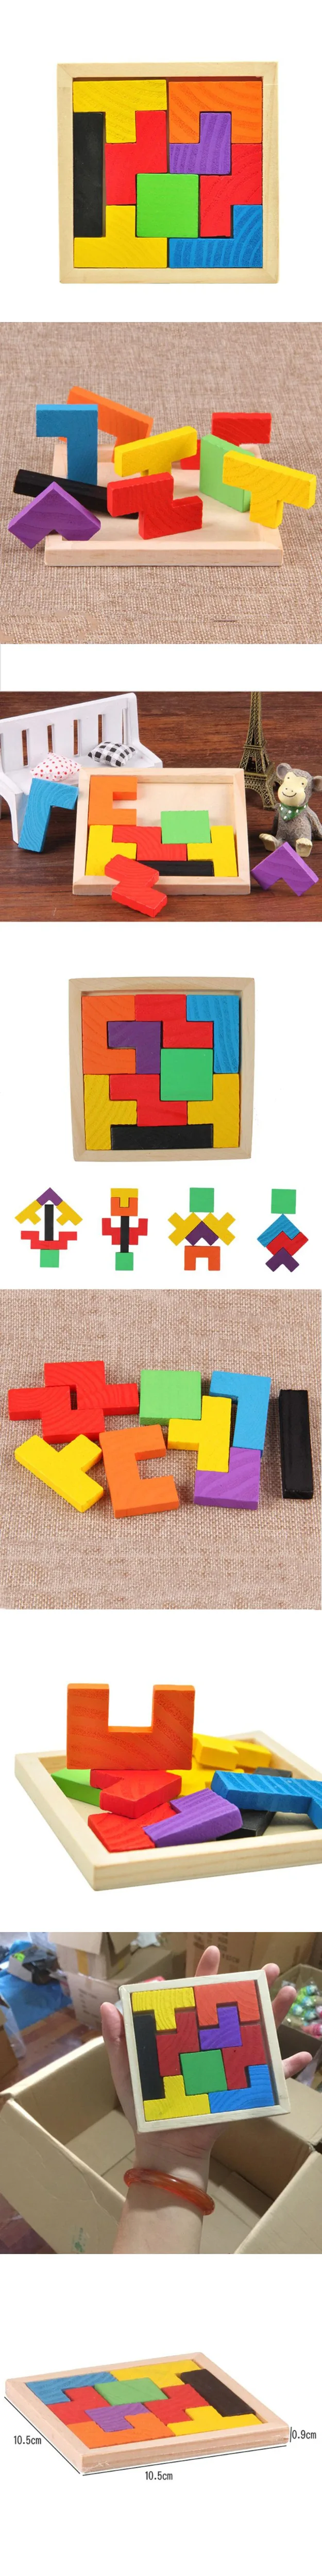 Цветной деревянный тетрис игровая развивающая головоломка игрушки Развивающие детские игрушки деревянная головоломка Танграм детские игрушки подарки